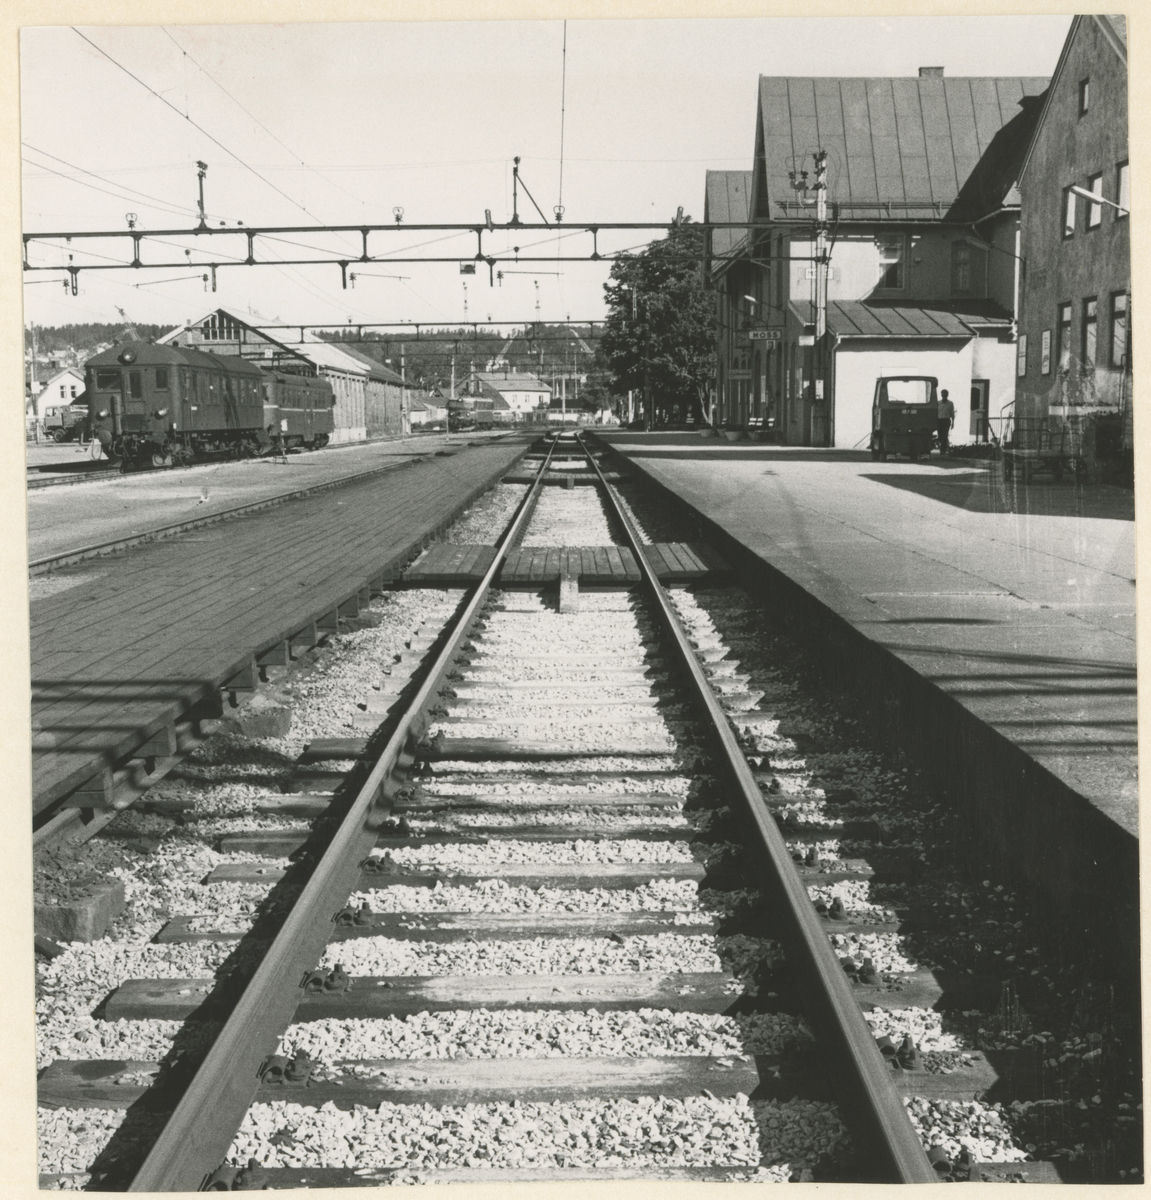 Fotograf har stått i sporet.
Detaljer: Parkert tog, lager, Moss jernbanestasjon.
Historikk: Det var togstans på Østfoldbanen etter et tog-uhell med en sporrenser.
